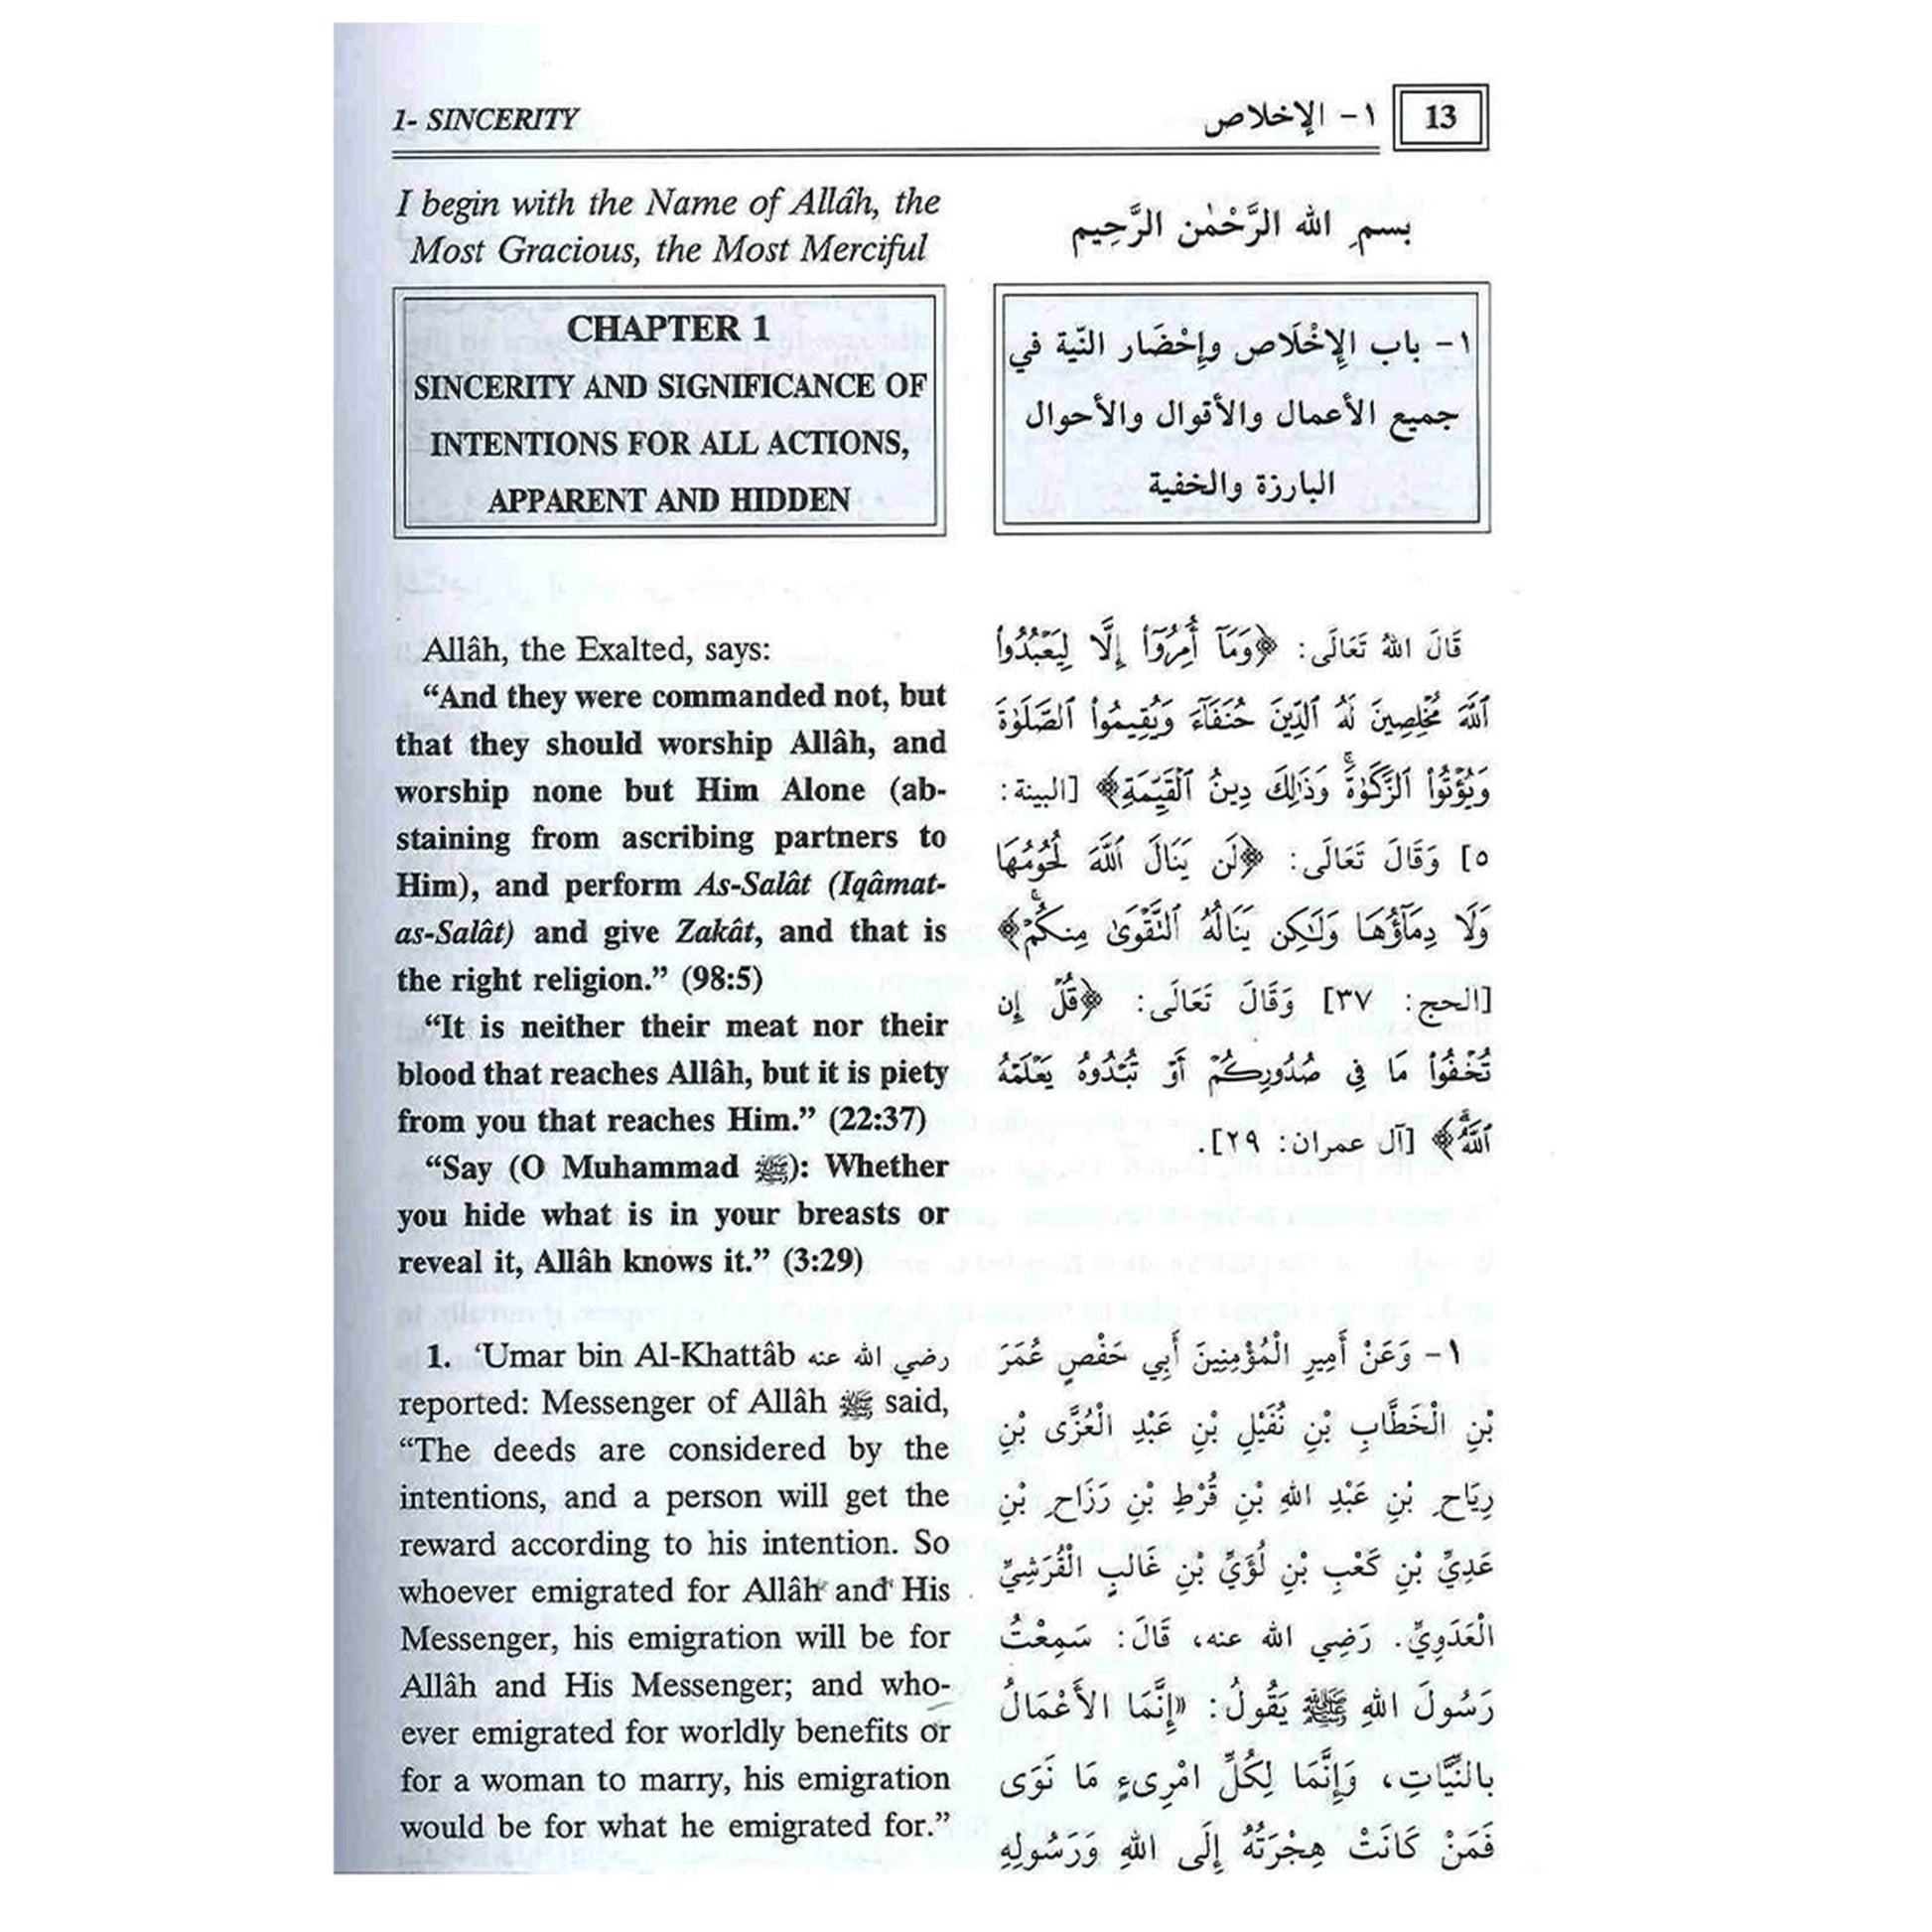 riyad-us-Saliheen Vol 1-2-almanaar Islamic Store